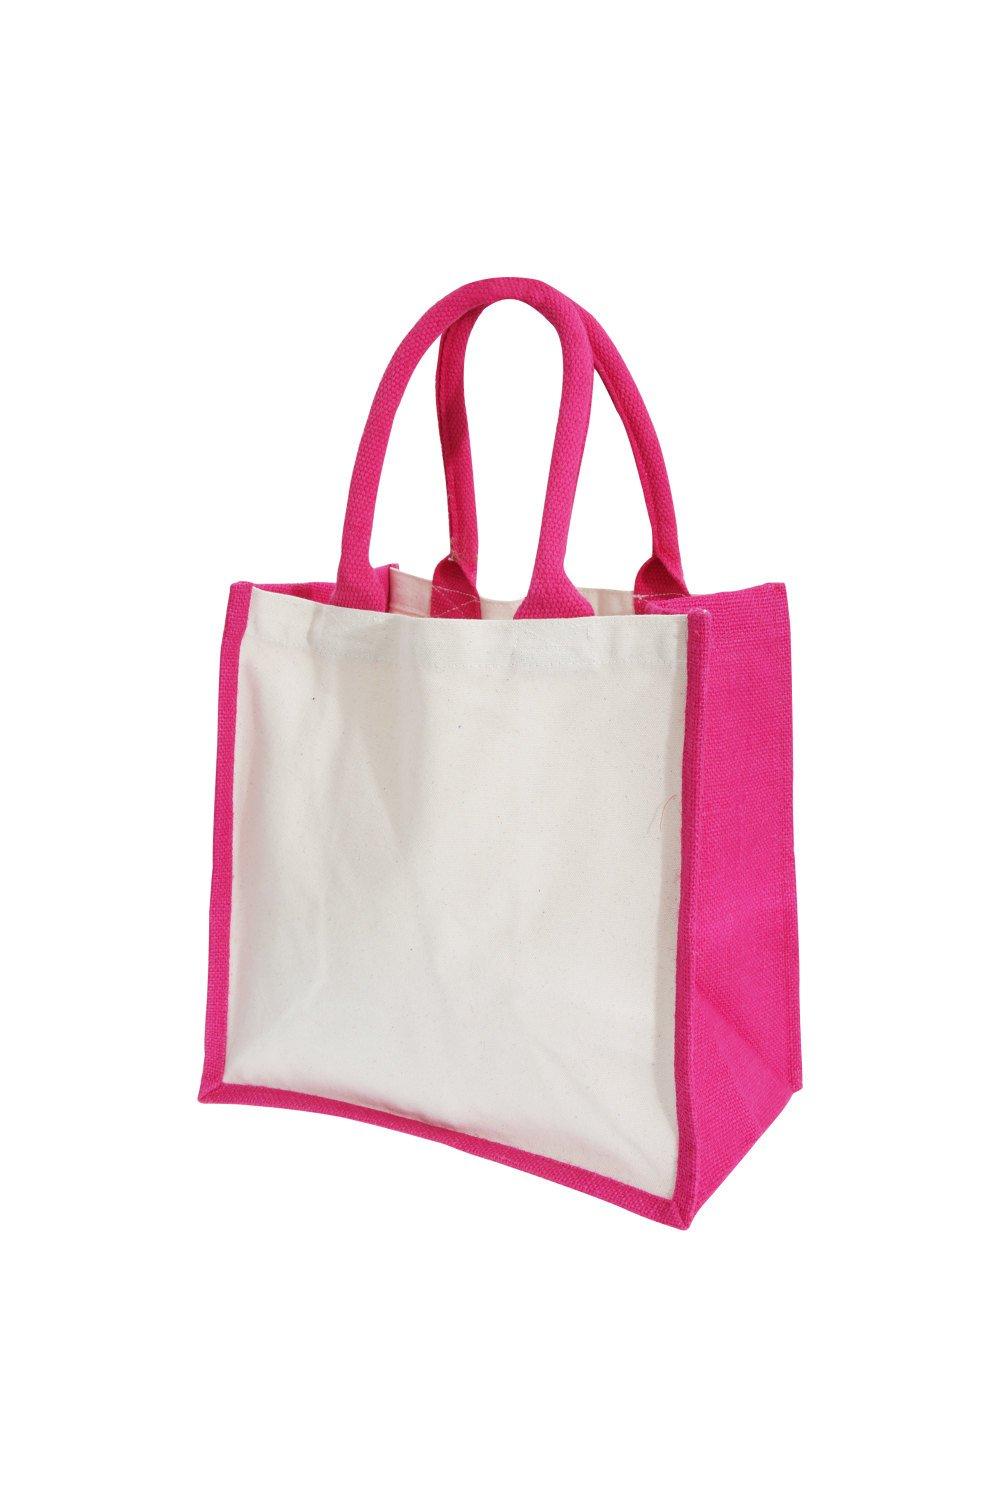 Джутовая сумка для принтеров миди (14 литров) Westford Mill, розовый